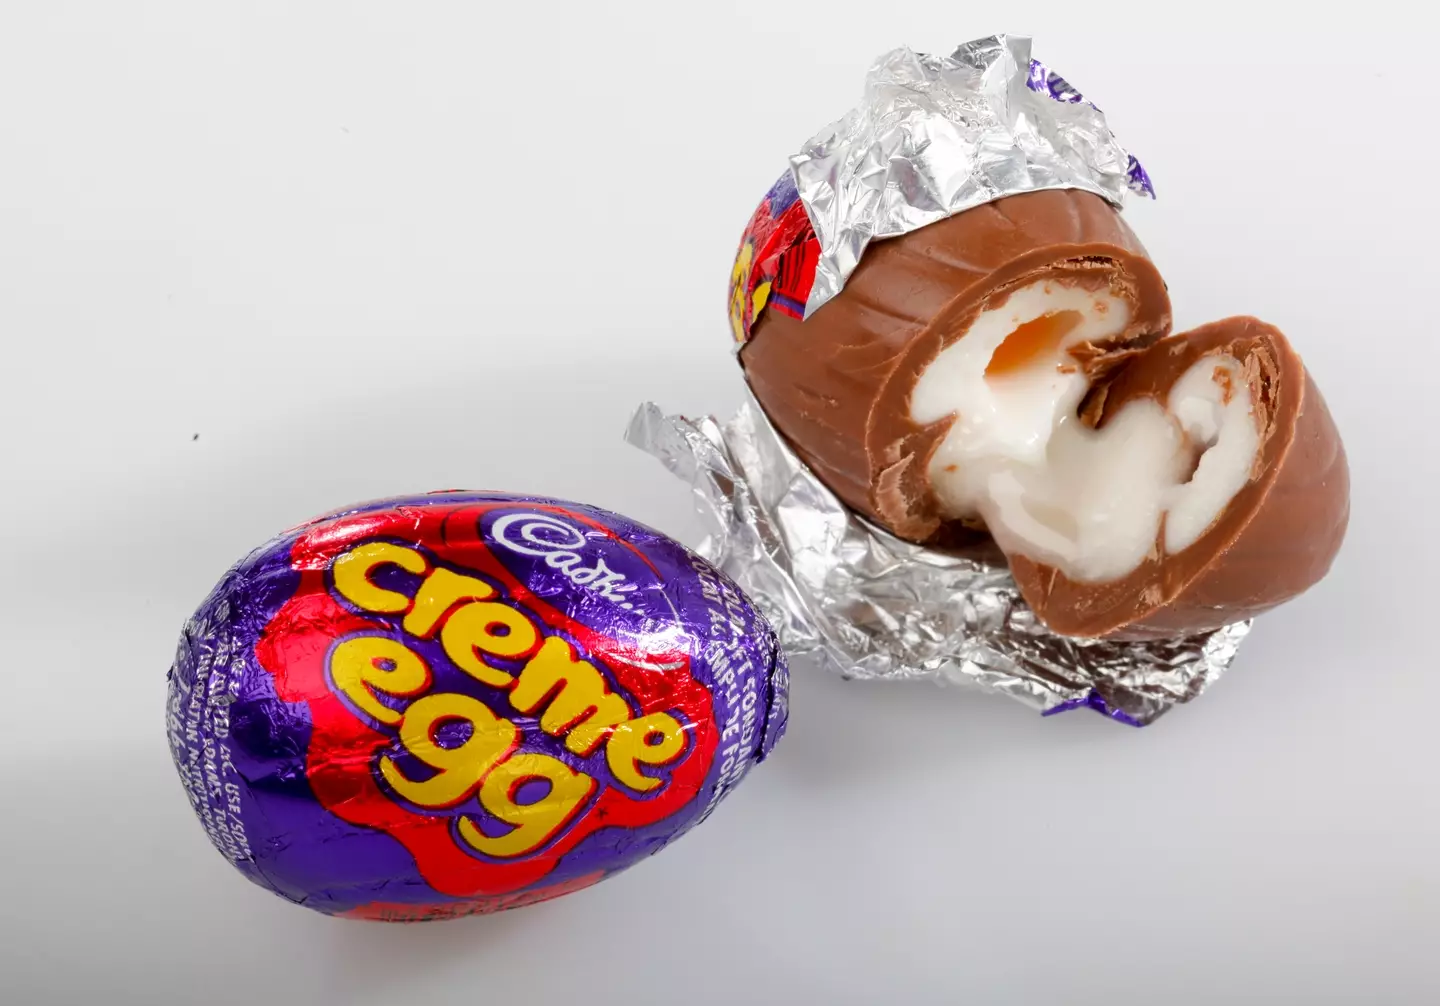 Pool stole 200,000 Cadbury's Creme Eggs.